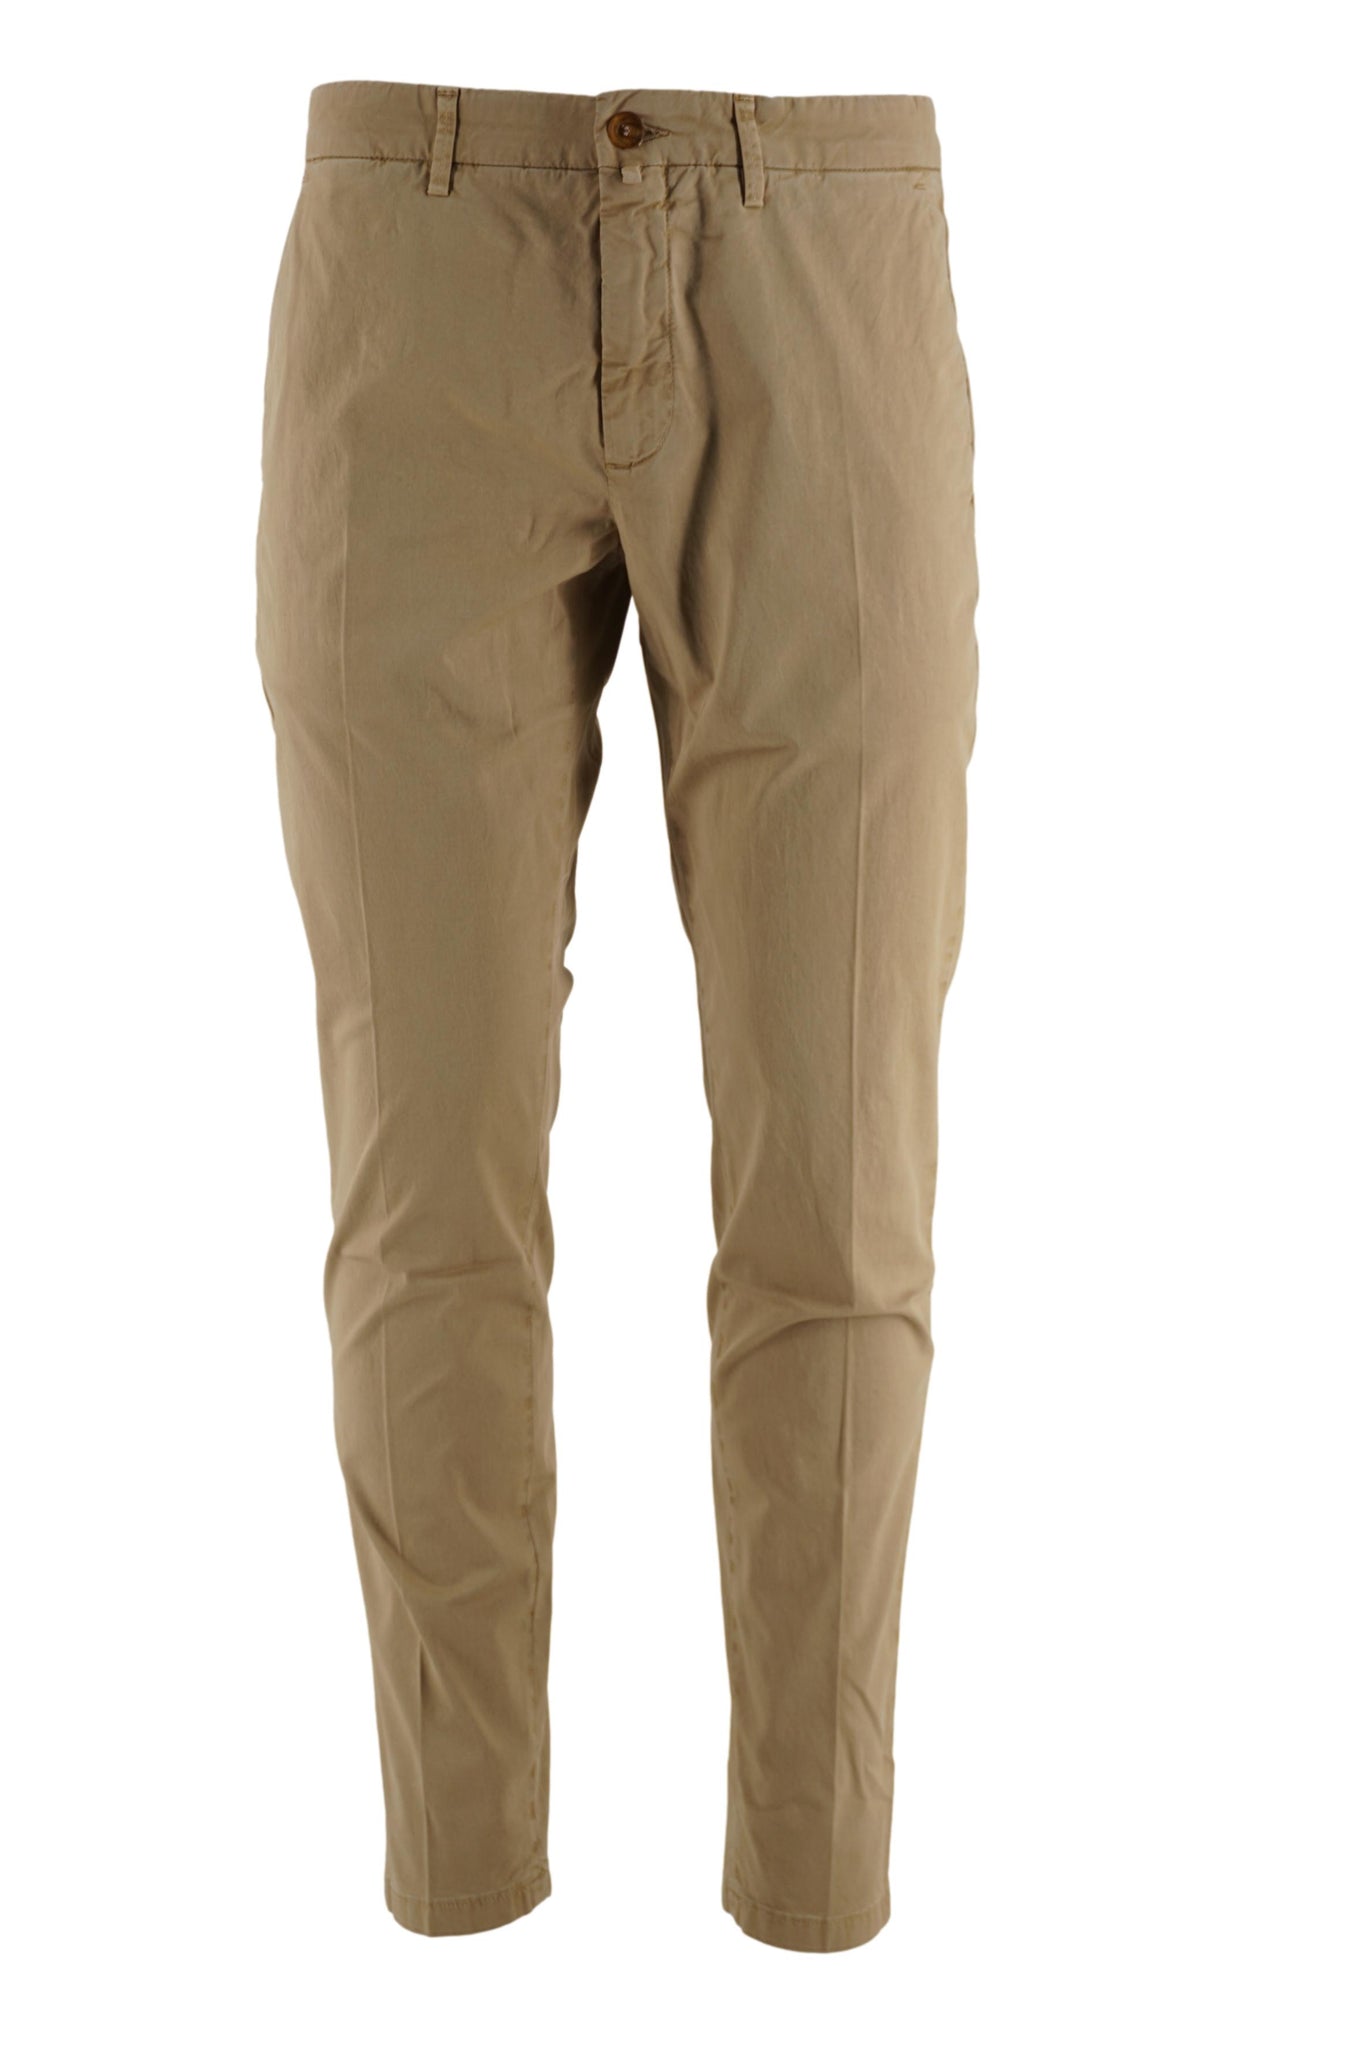 Pantalone Chino Modello Pasolini / Beige - Ideal Moda